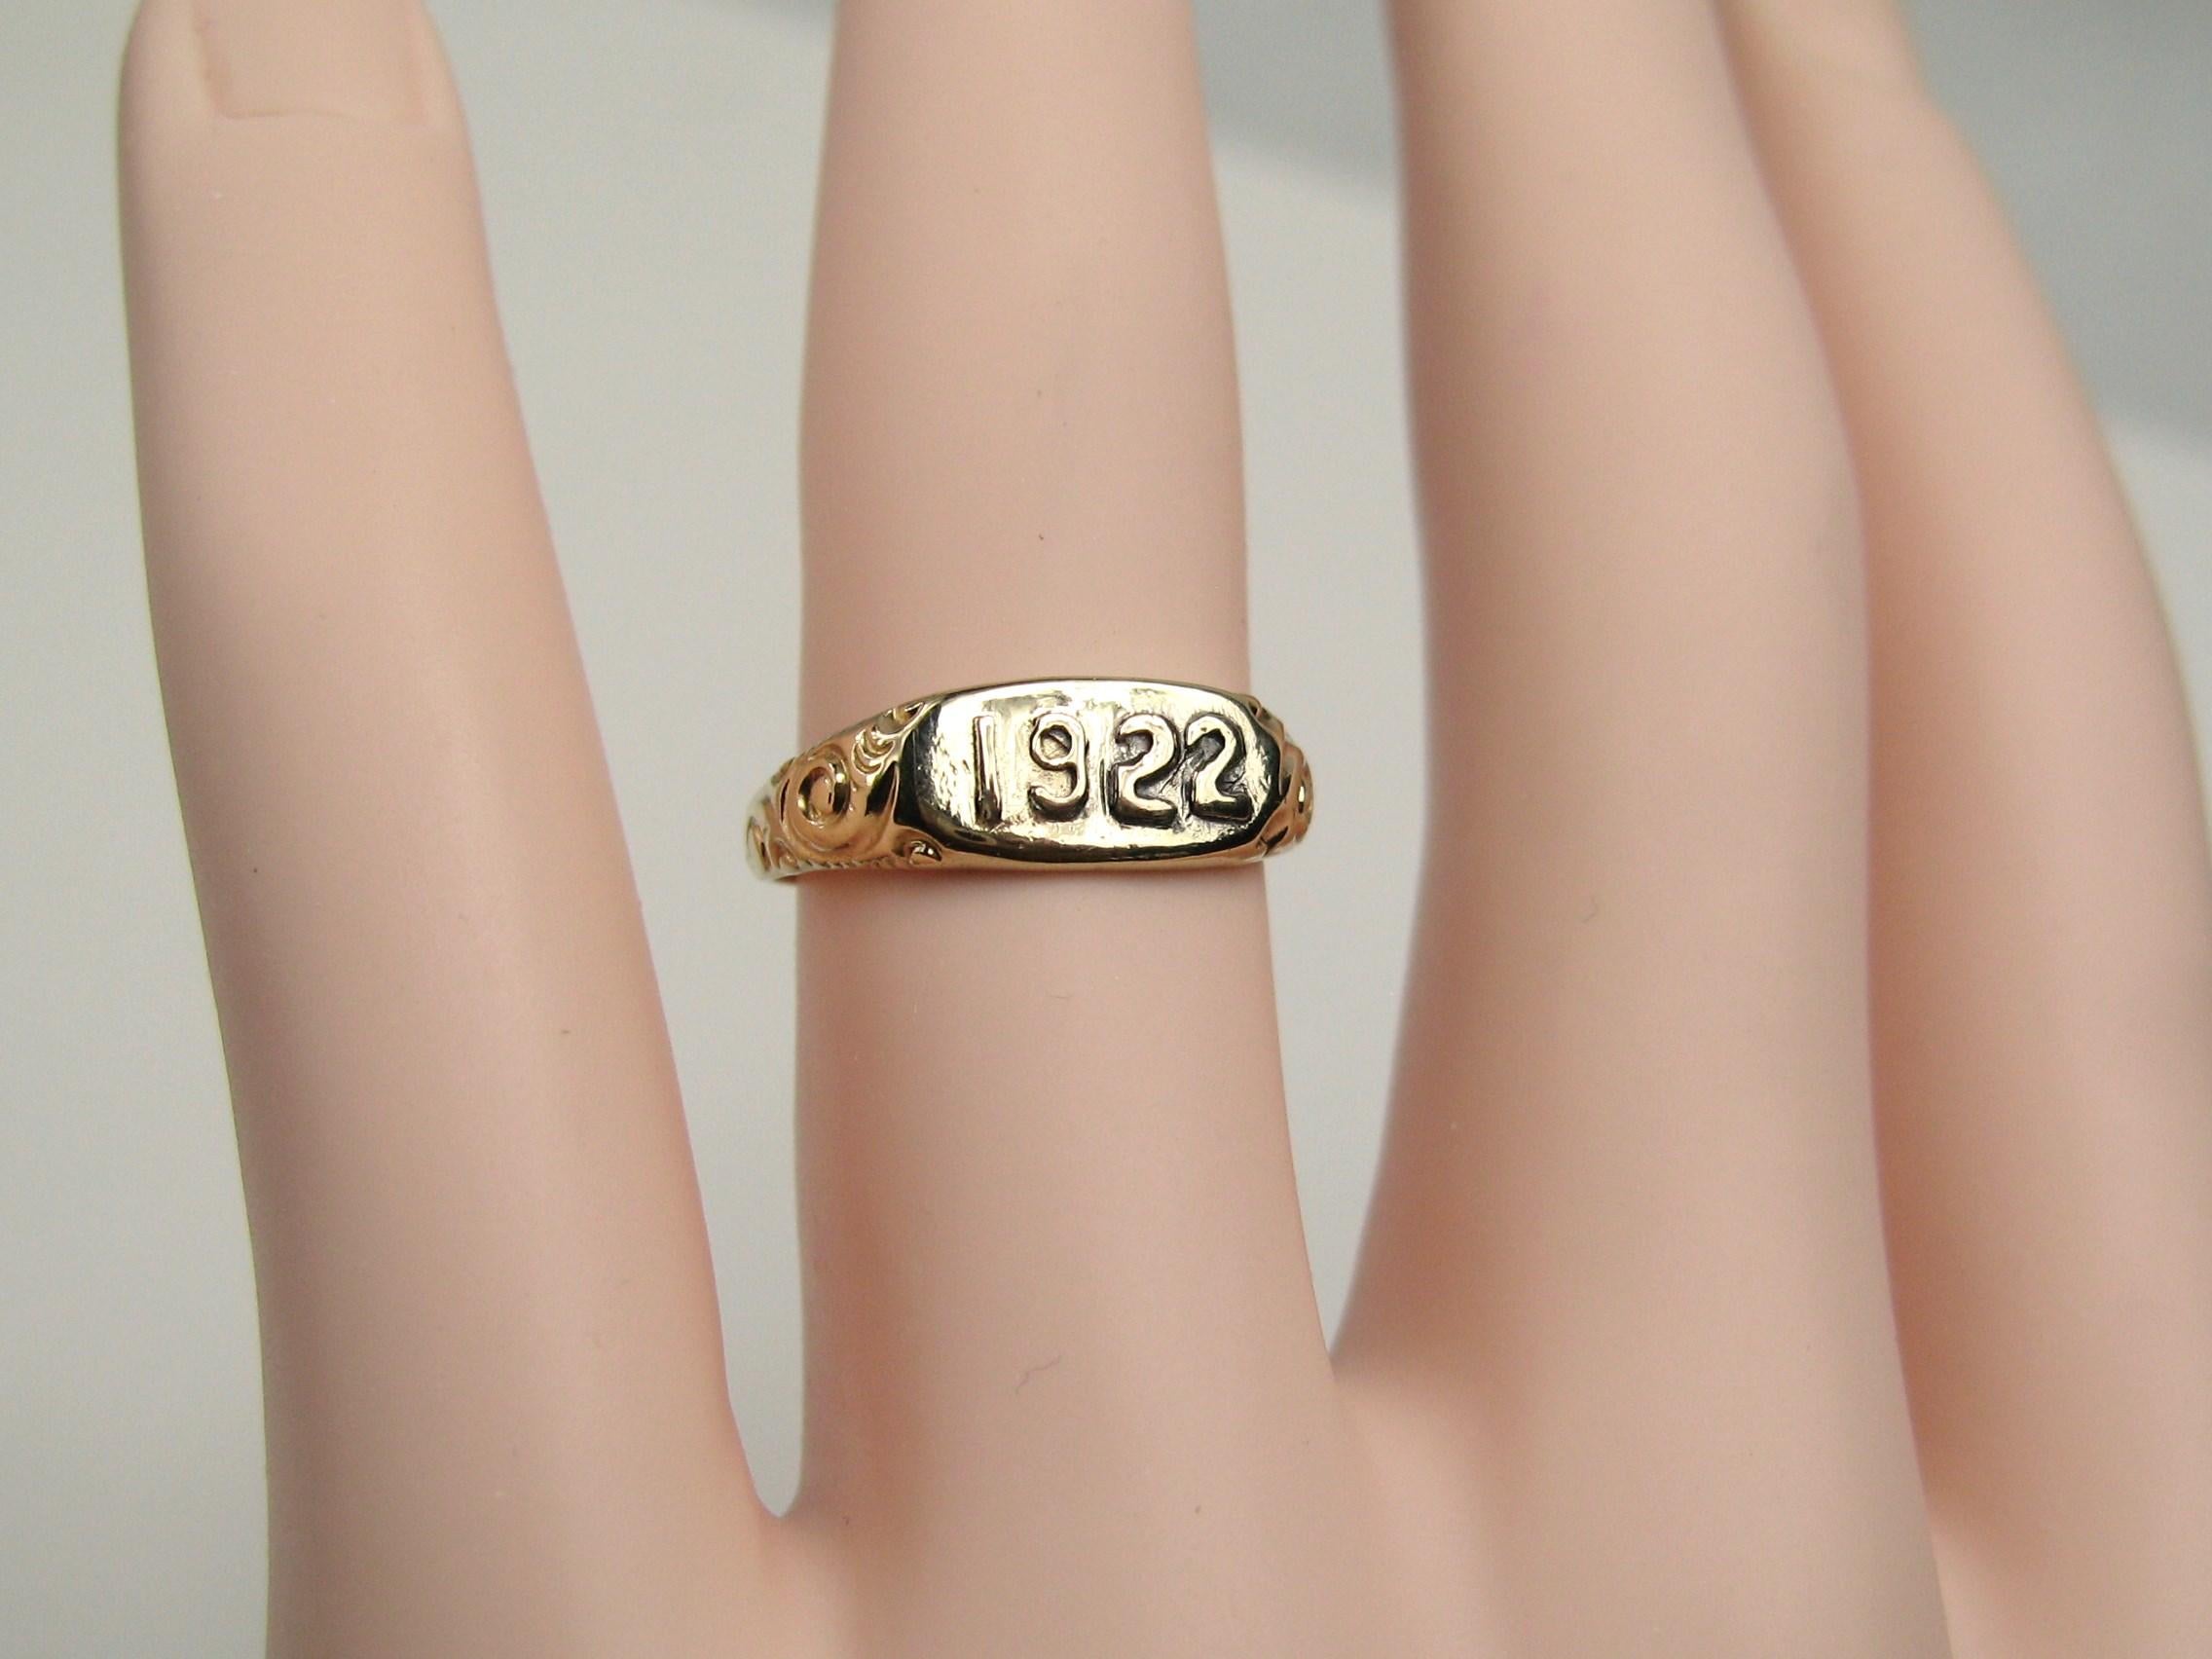 Wunderschöner 1922 geprägter 10k Gold Ring. Verschnörkeltes Design auf dem Schaft des Rings. Der Ring hat die Größe 6-1/4 und kann von uns oder Ihrem Juwelier angepasst werden. Der Ring ist auf der Innenseite des Bandes gestempelt. Der Ring ist an